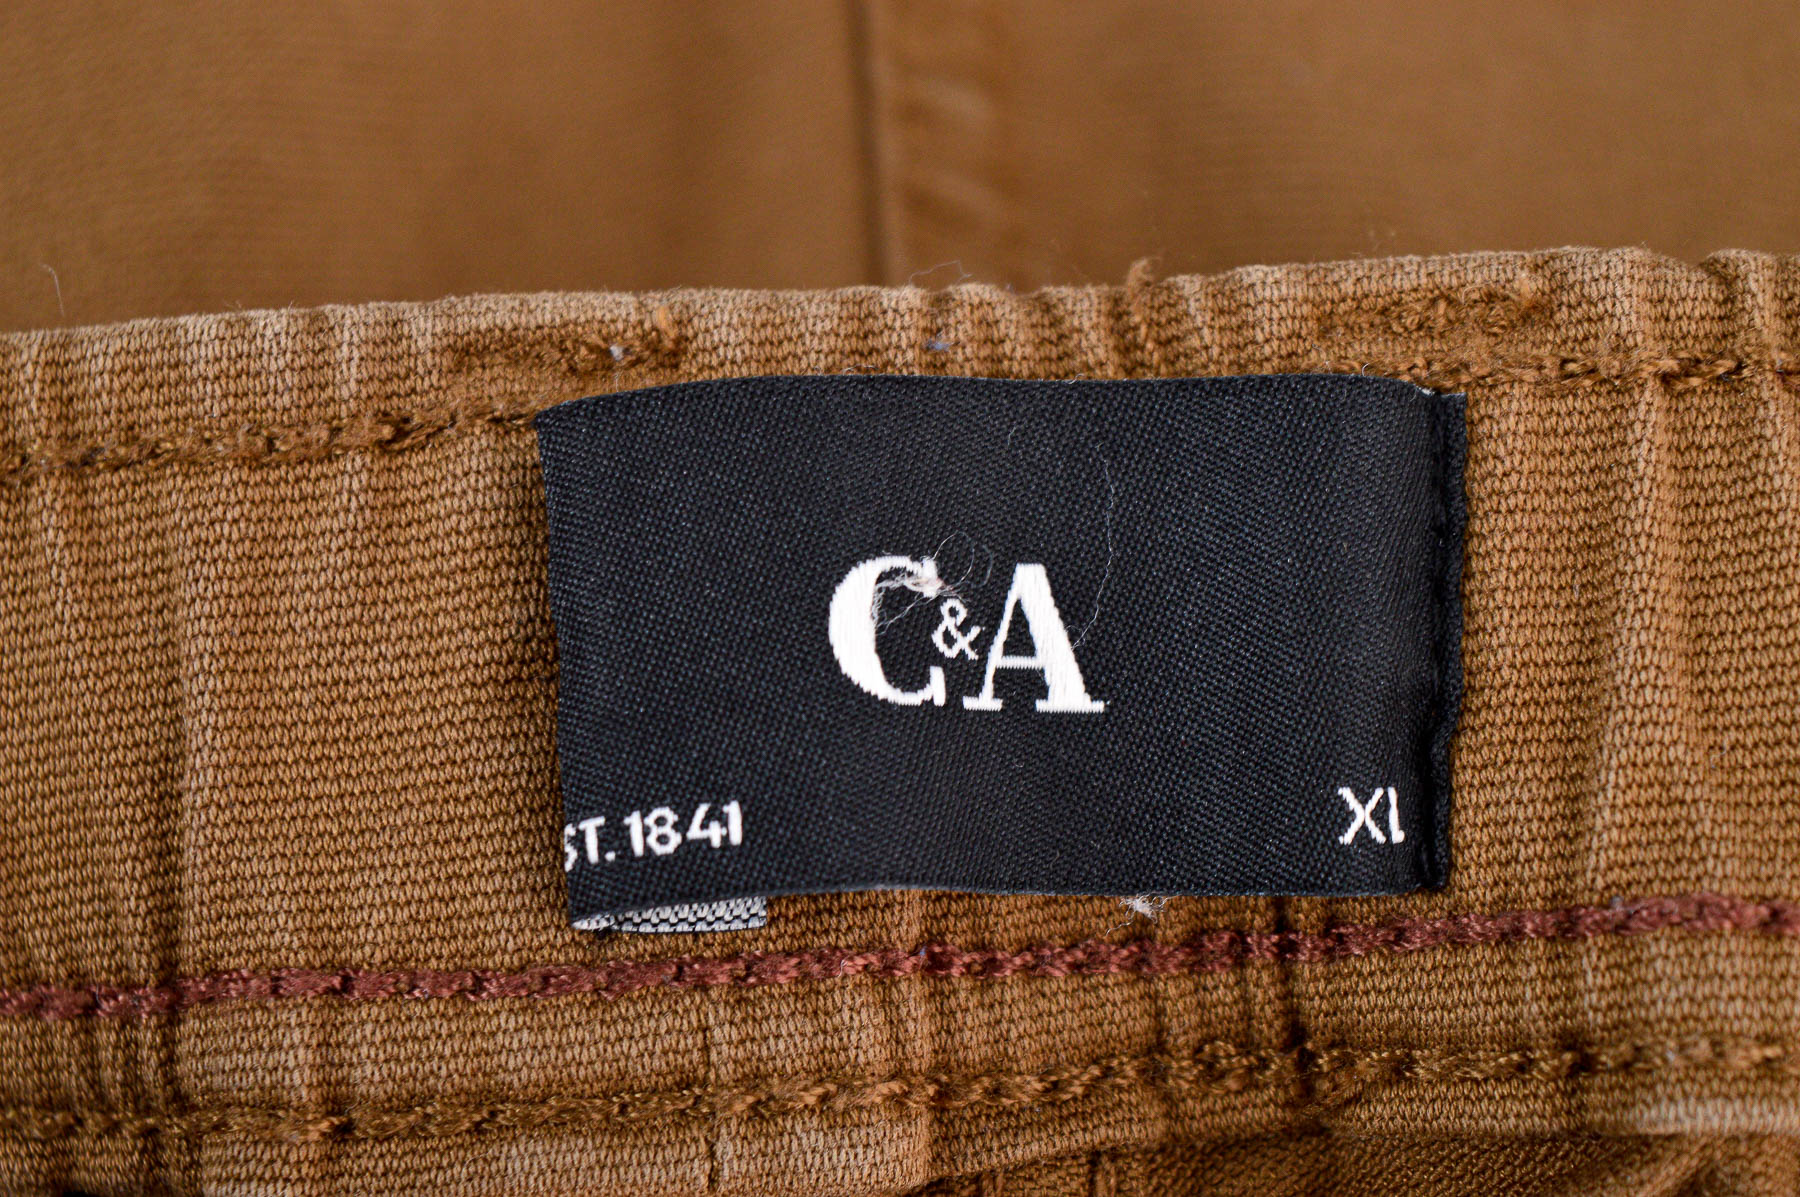 Men's trousers - C&A - 2